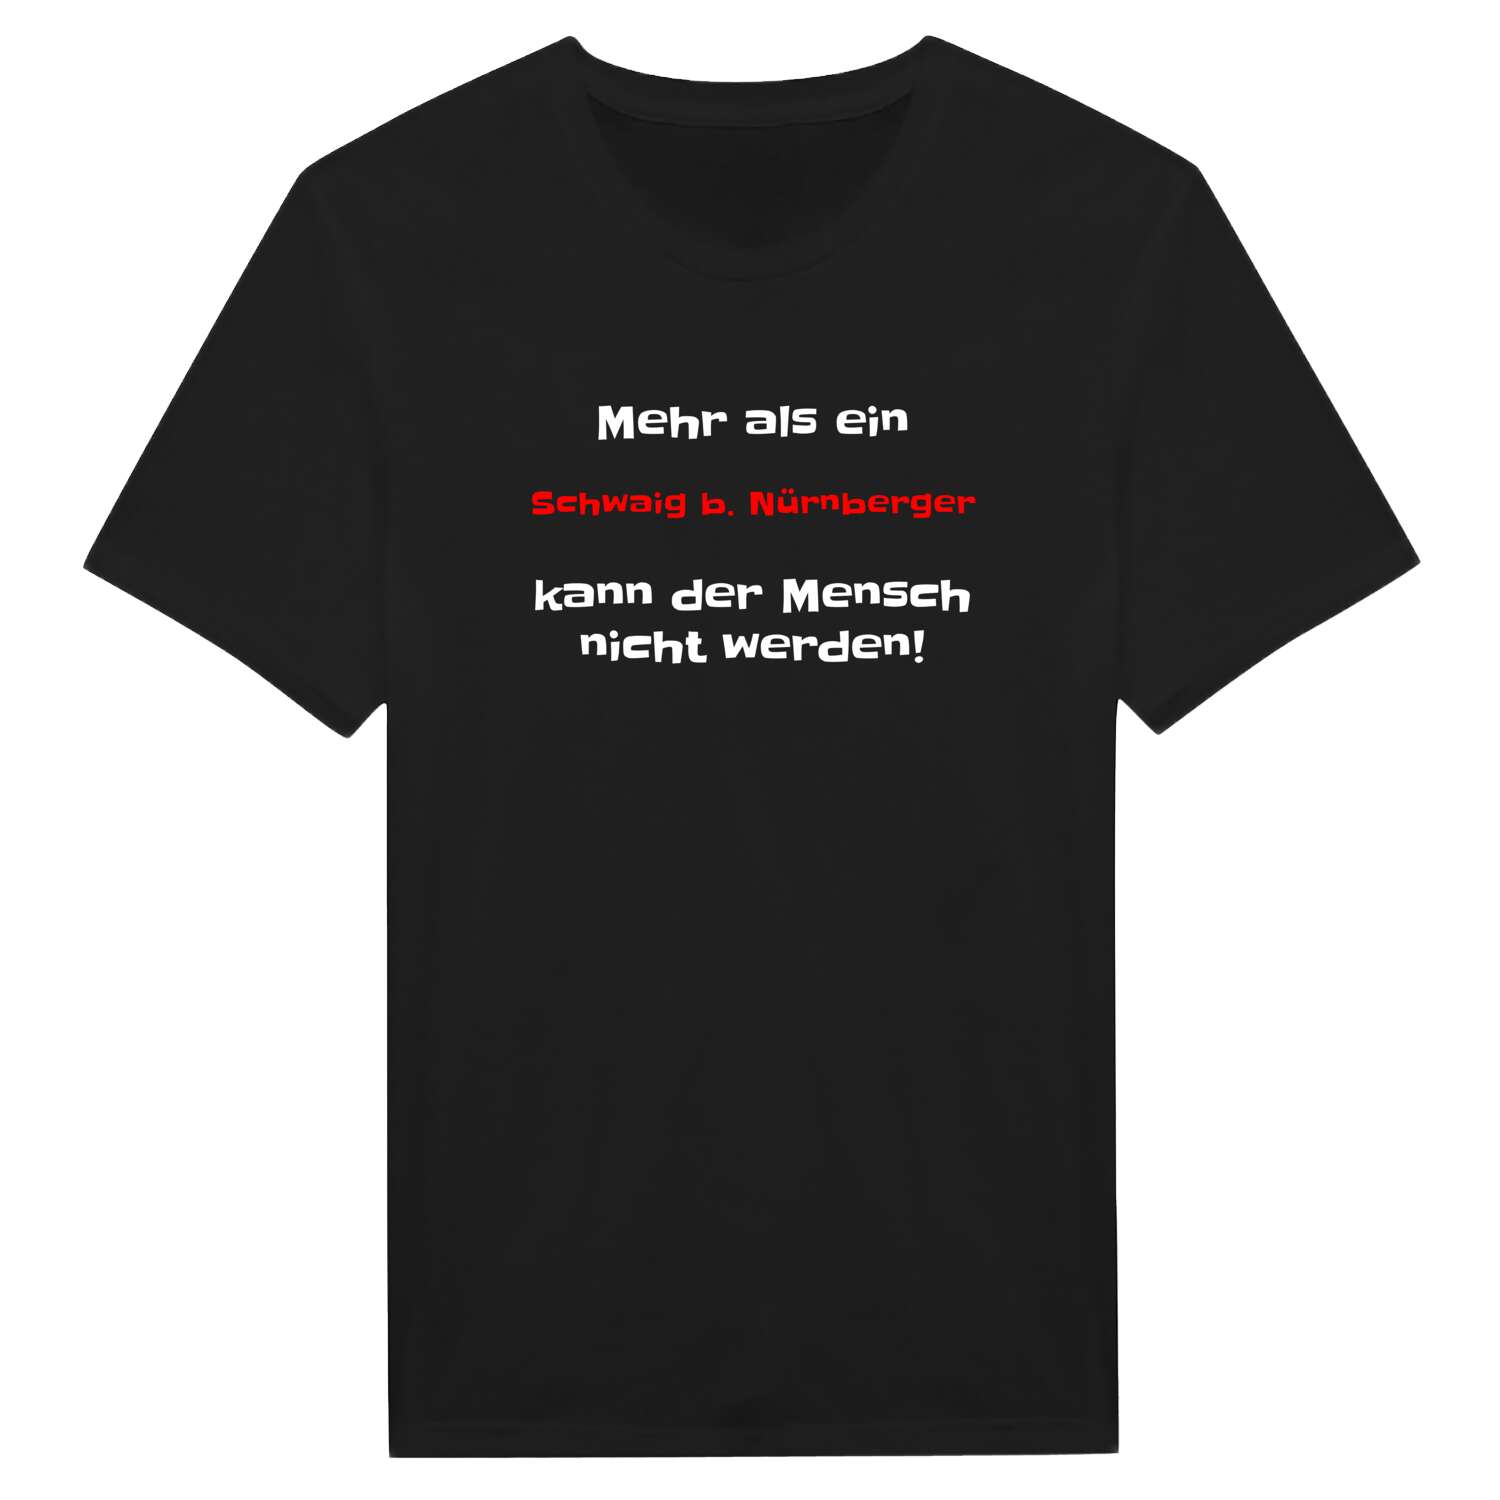 Schwaig b. Nürnberg T-Shirt »Mehr als ein«